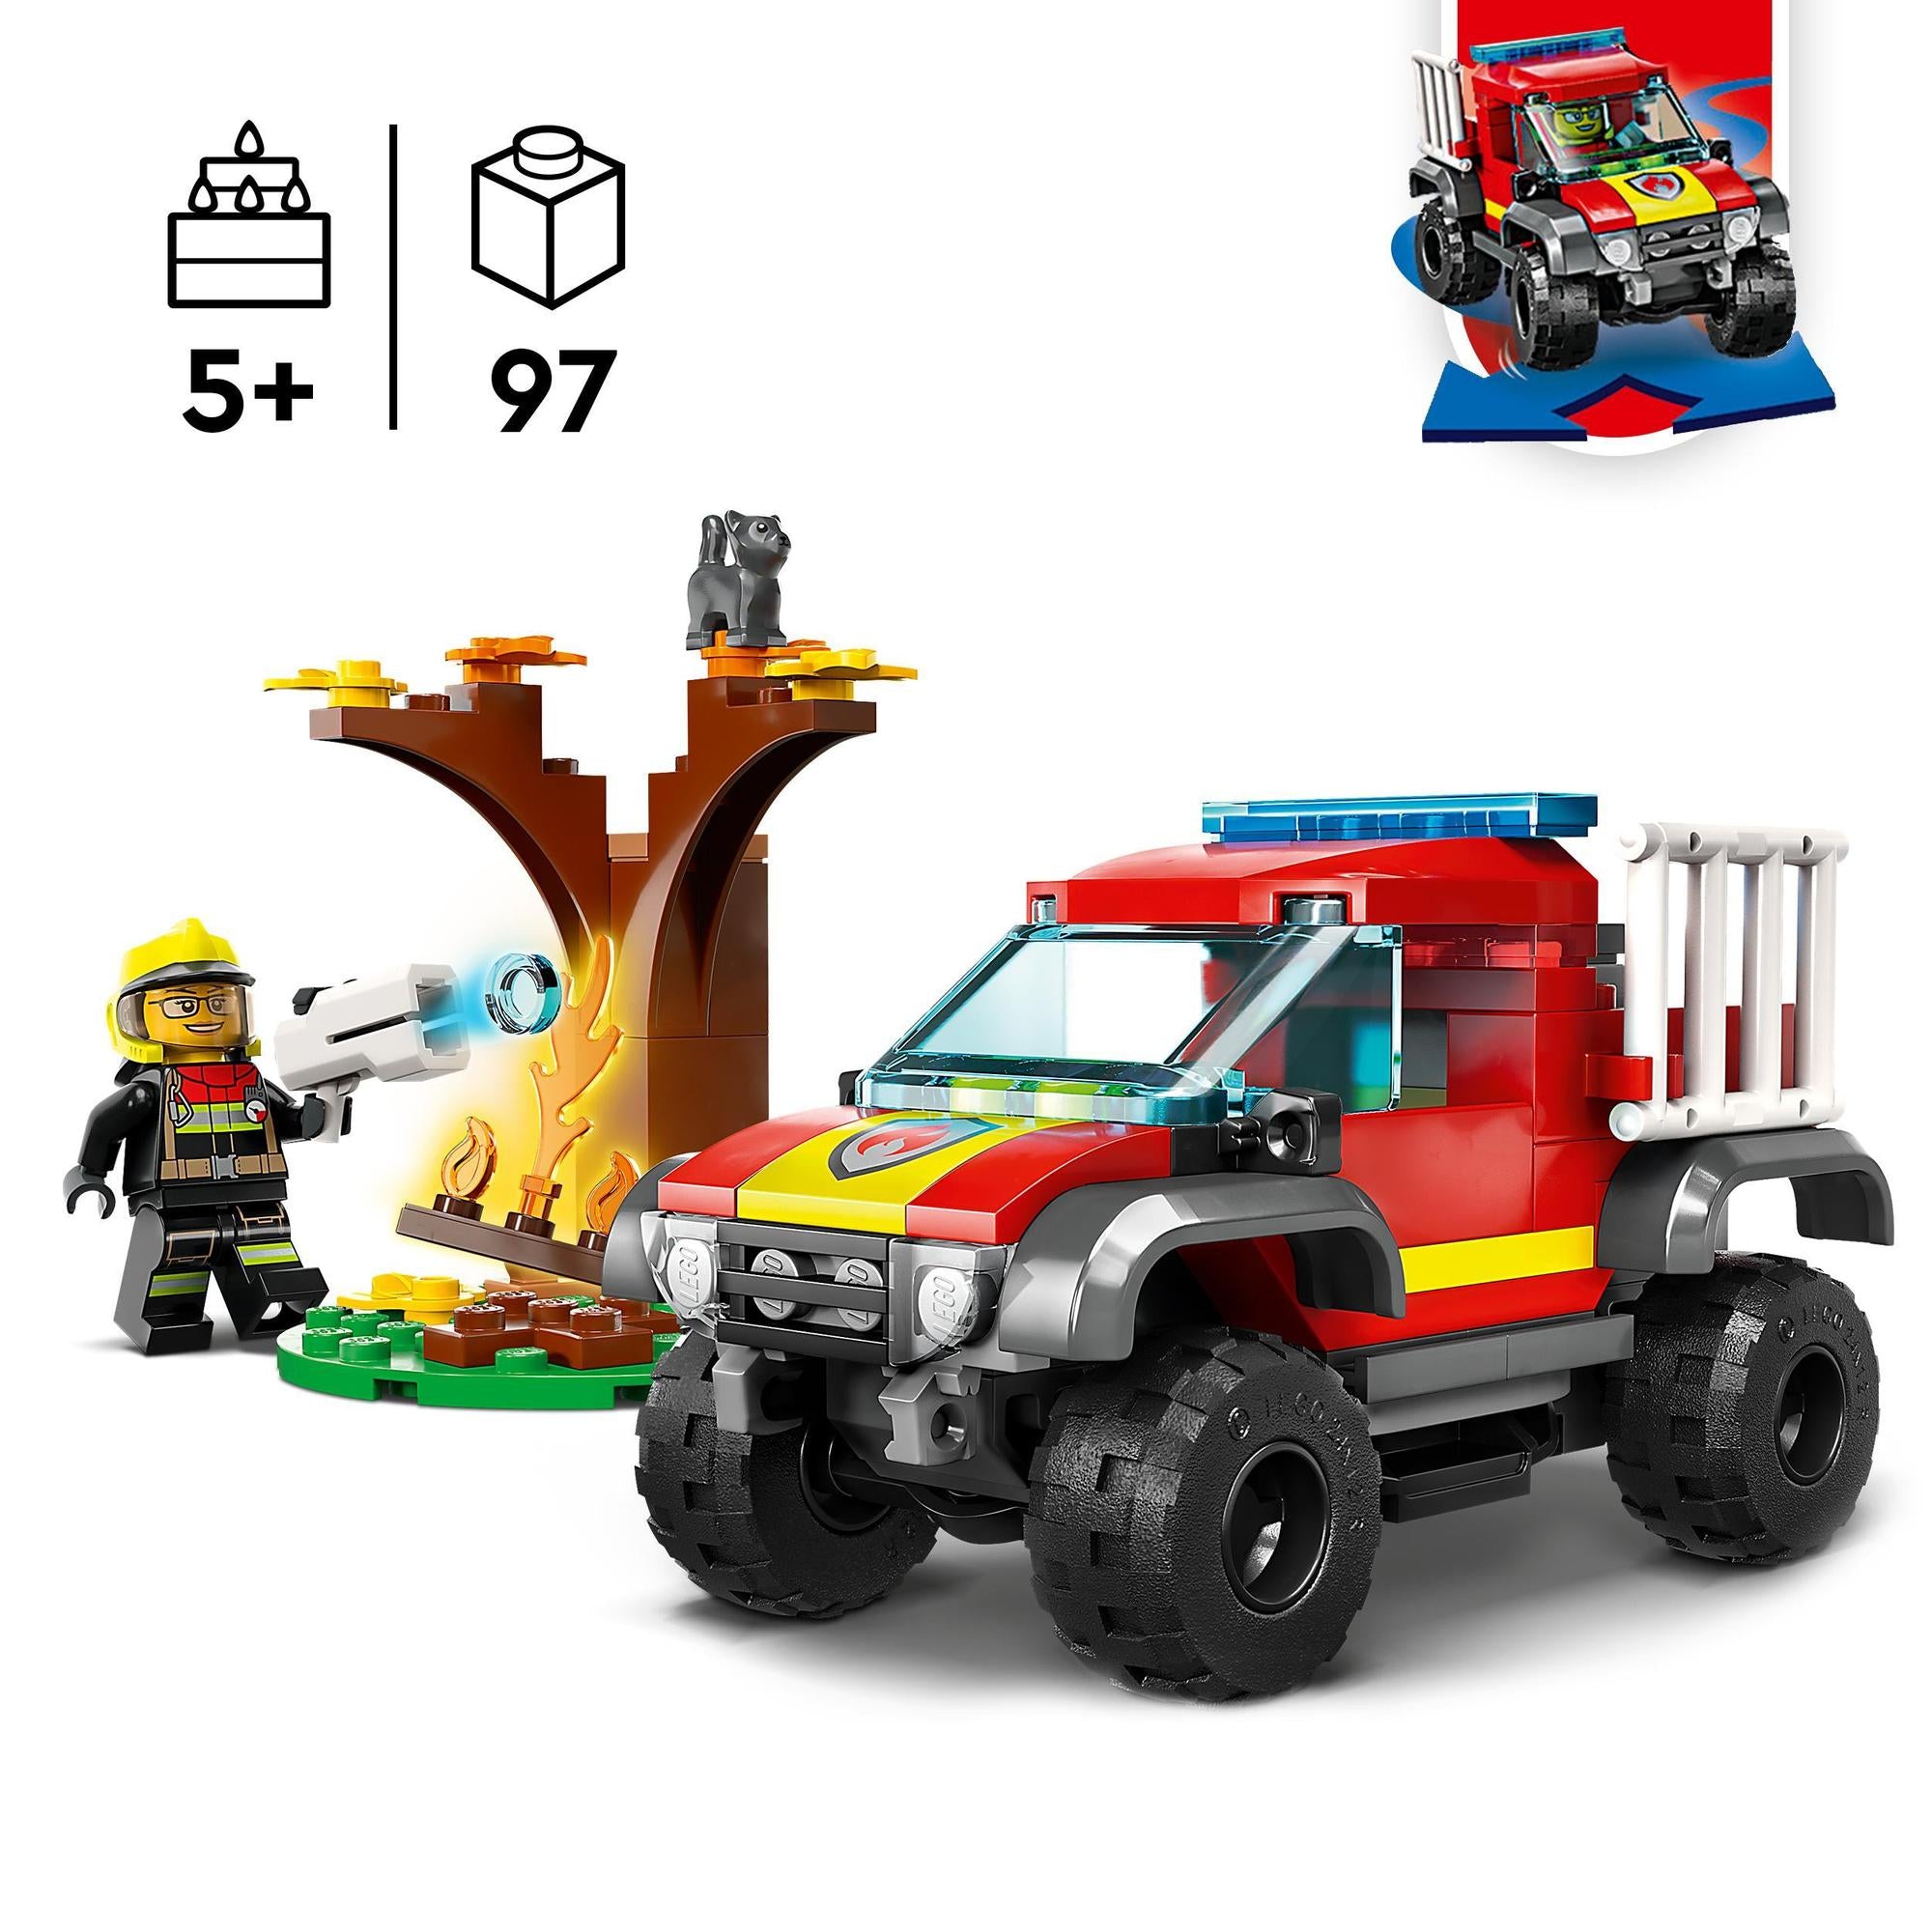 LEGO® | 60393 | Feuerwehr-Pickup